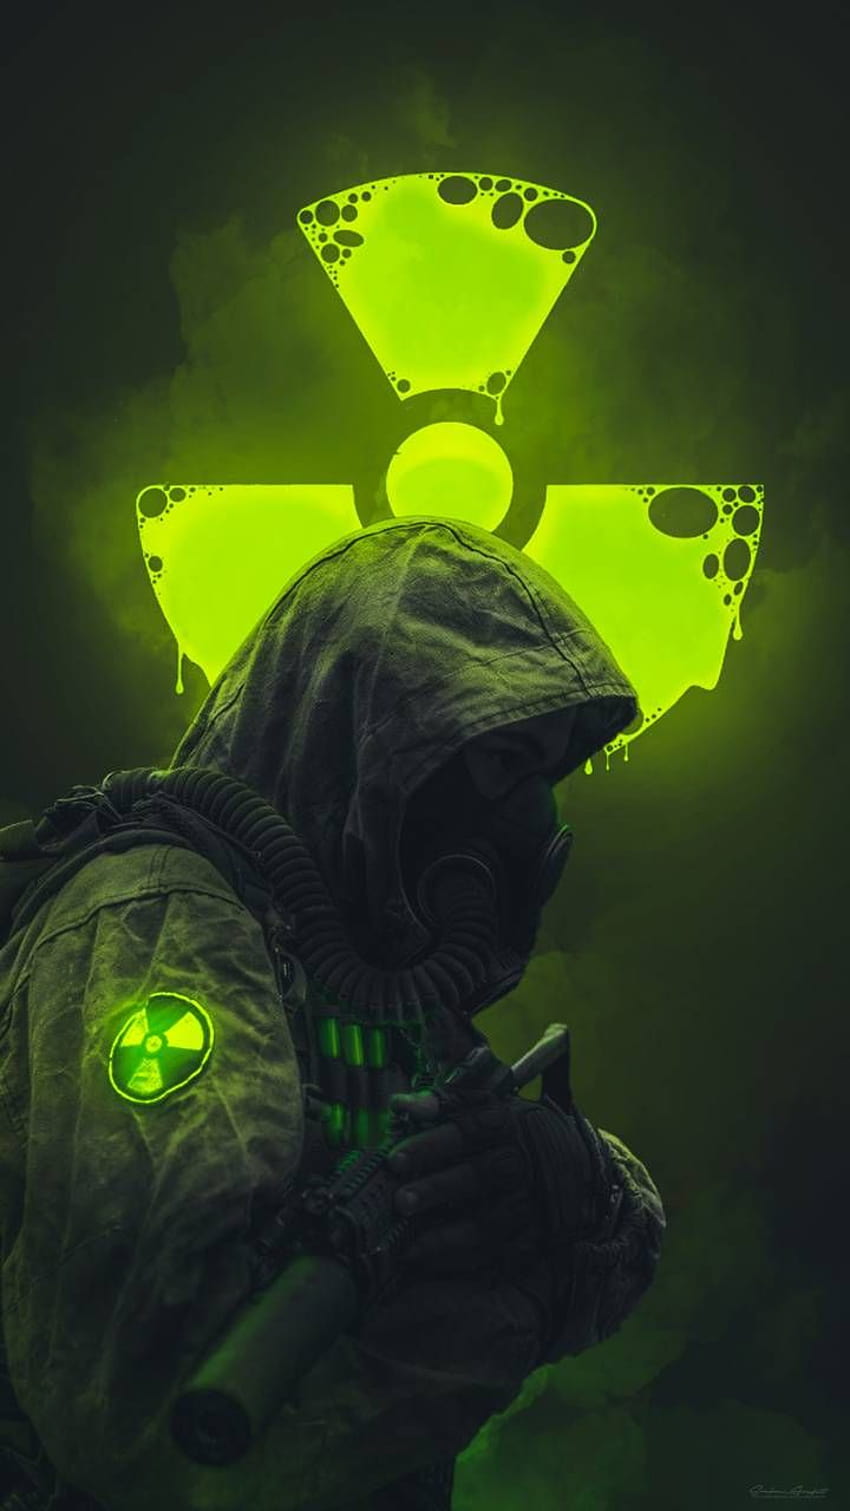 Prajurit Radioaktif oleh SrabonSana, prajurit gelap wallpaper ponsel HD